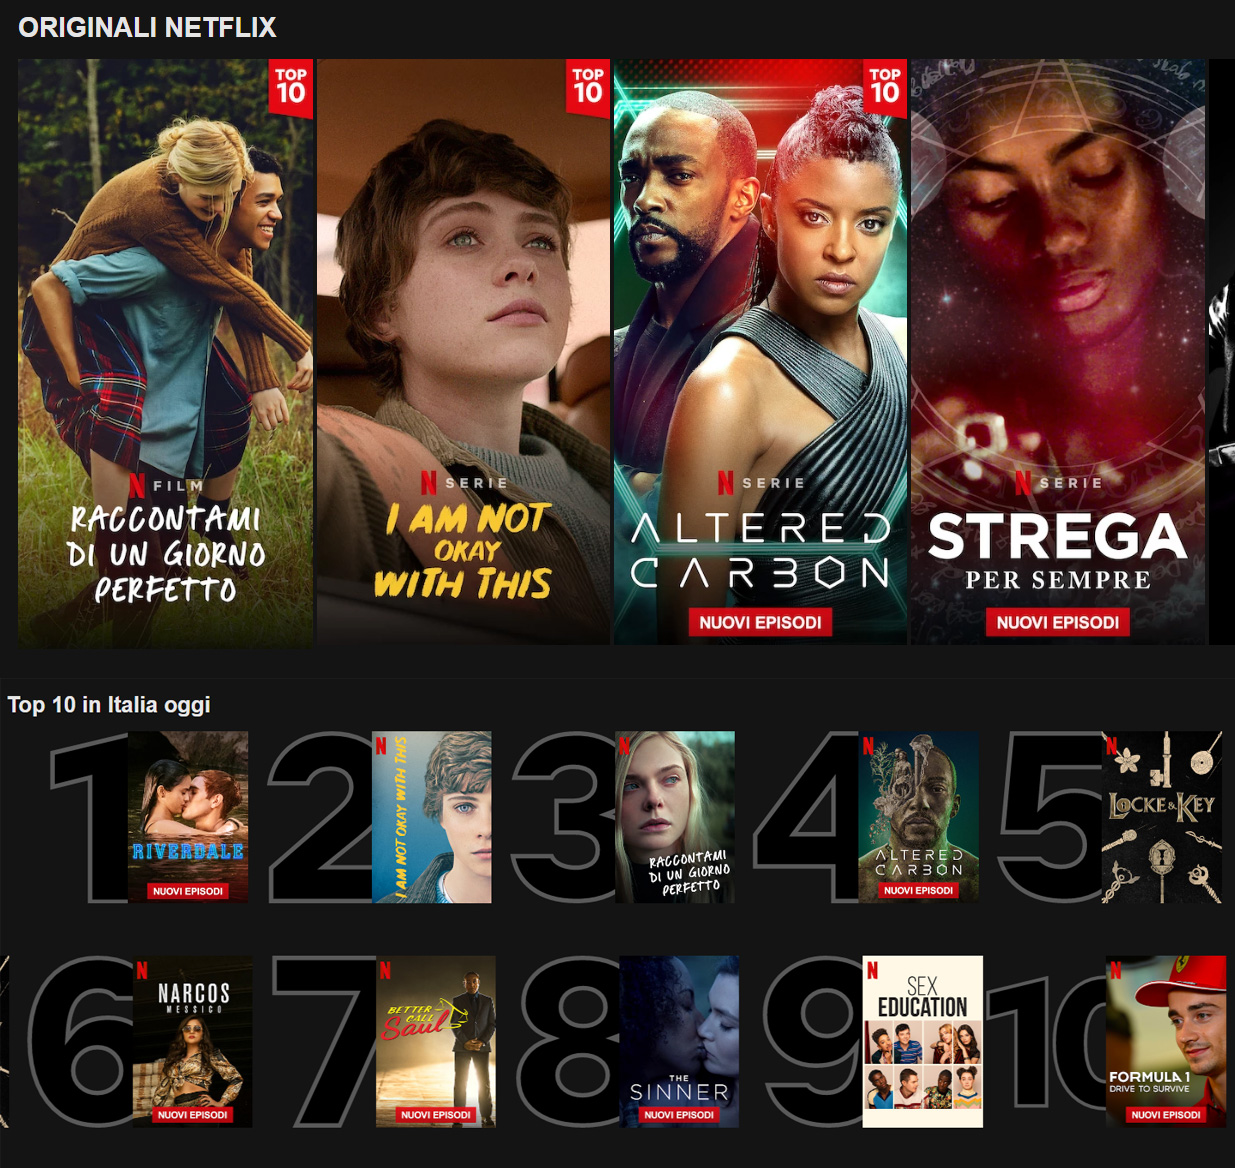 Esempio di classifiche dei contenuti popolari su Netflix in Homepage